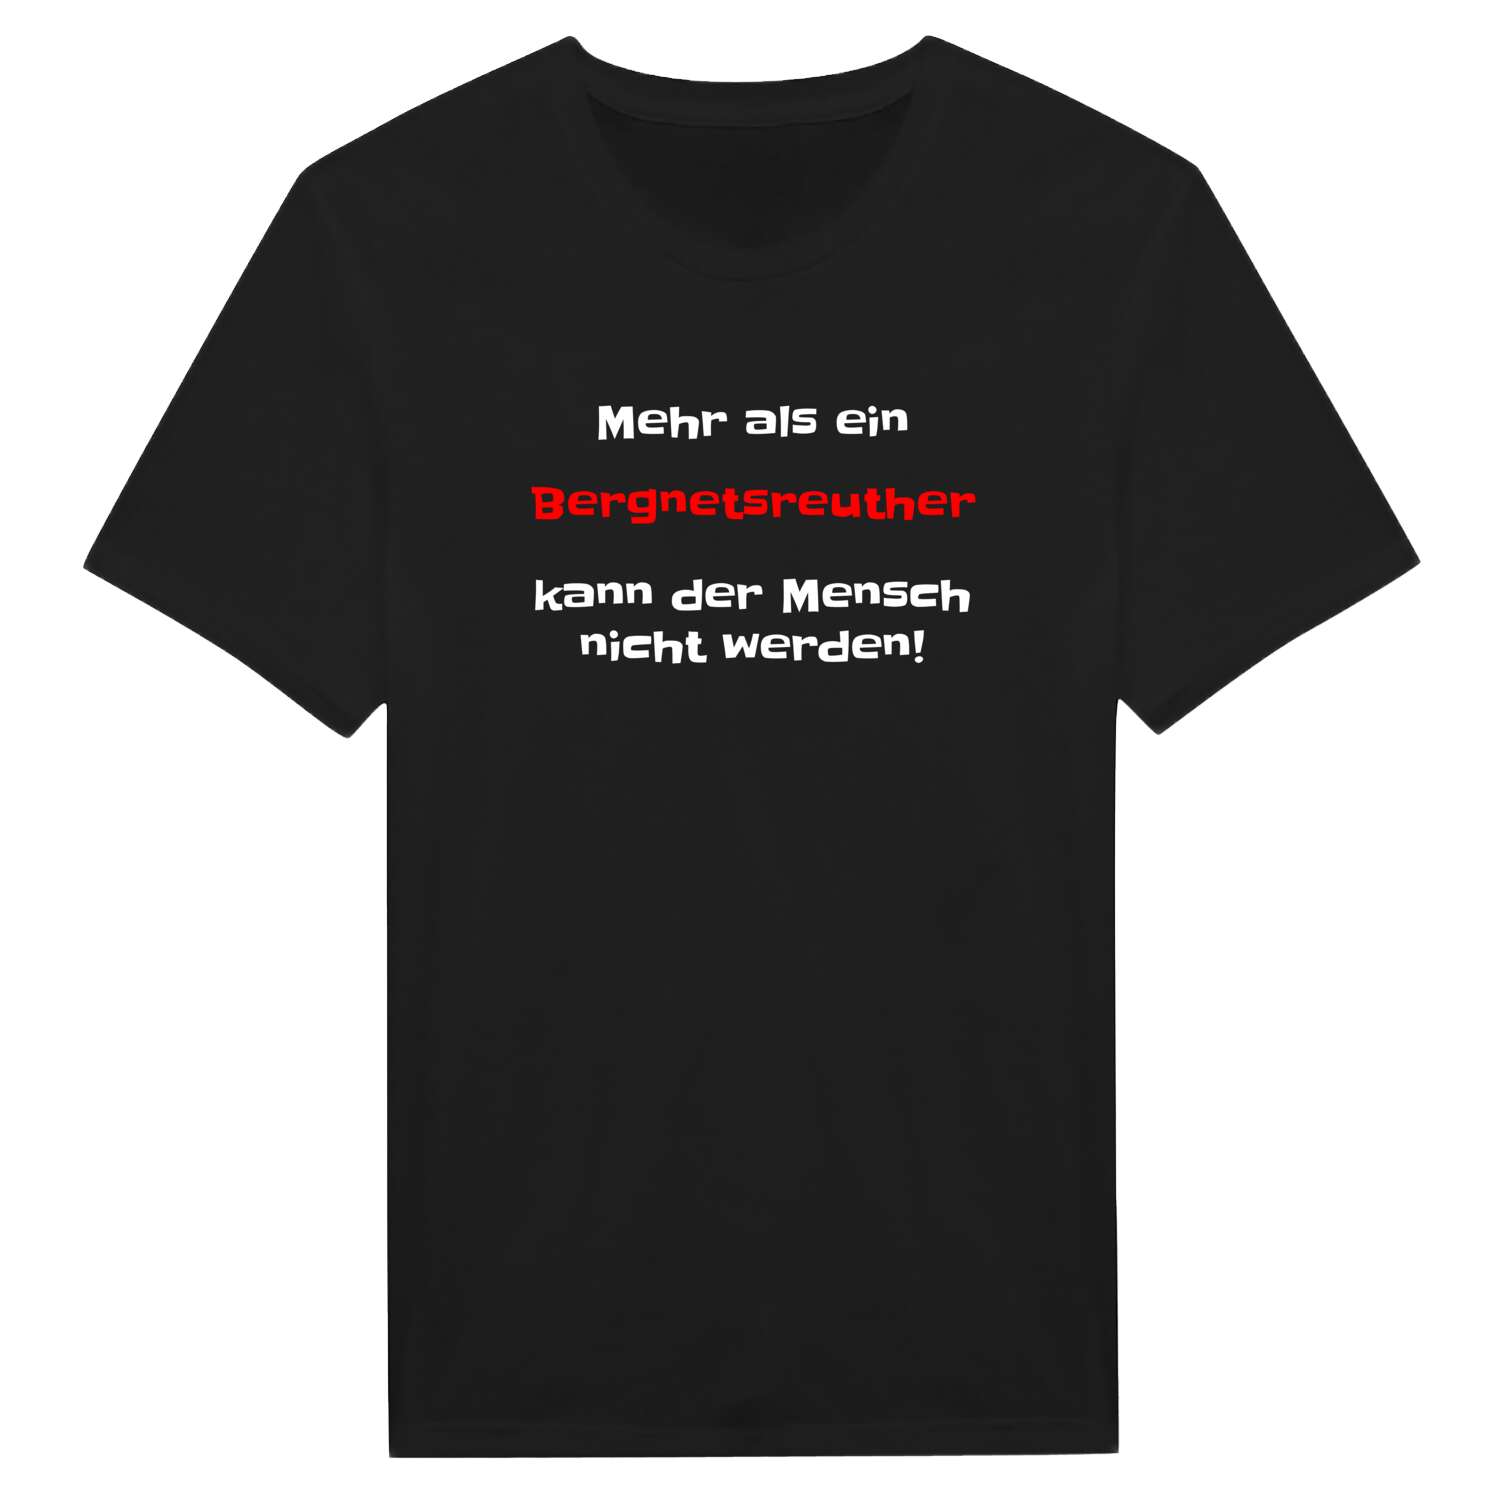 Bergnetsreuth T-Shirt »Mehr als ein«